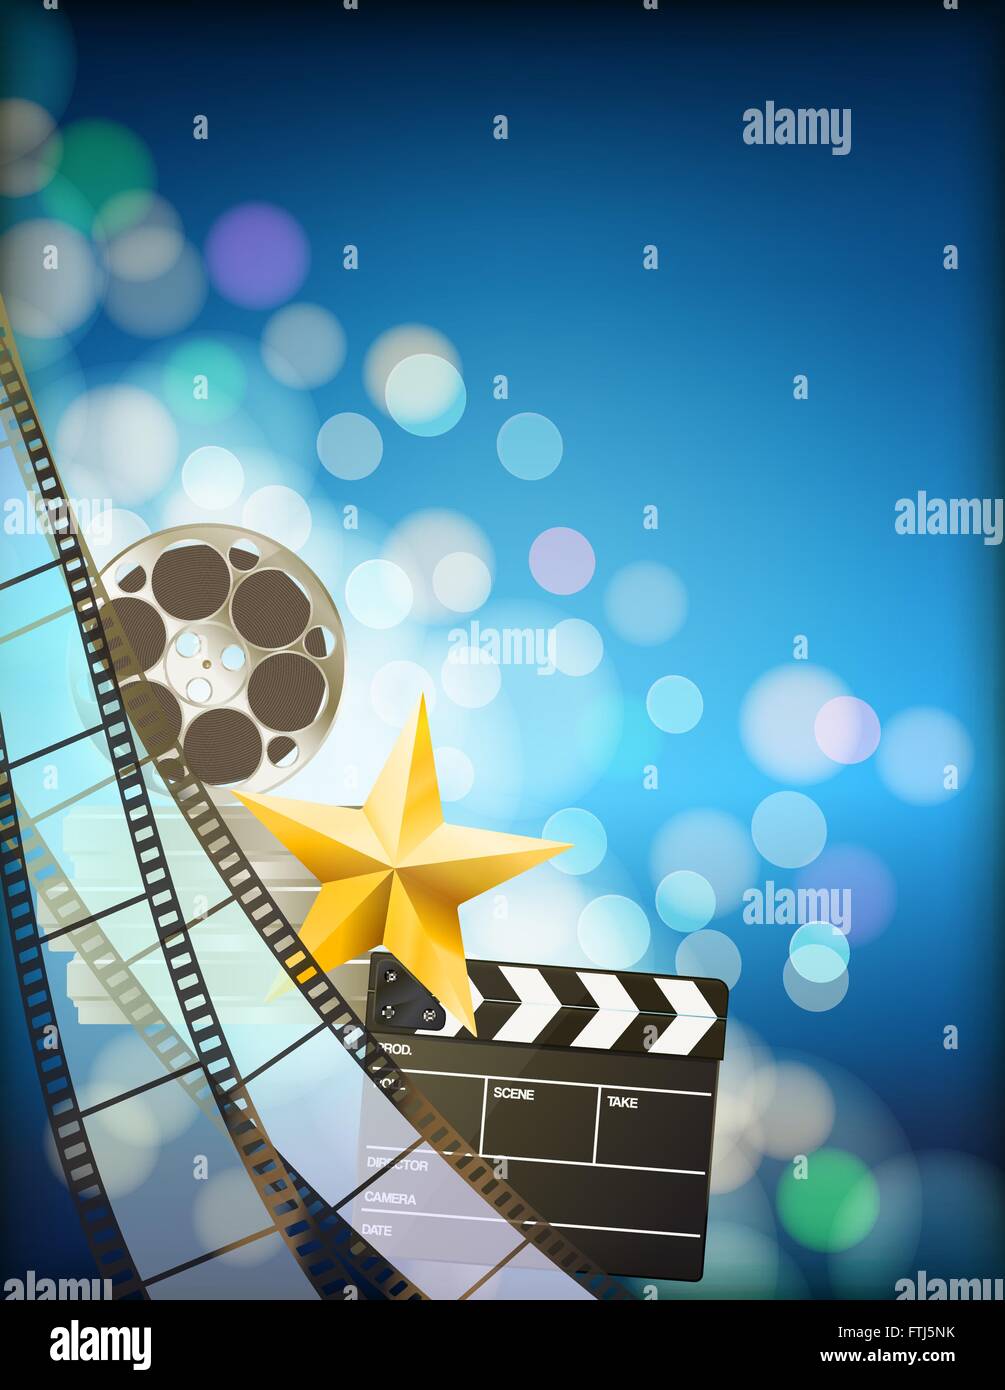 Filmstreifen-Hintergrund mit Klöppel, Walzen, Goldener Stern und Lichteffekten auf blauem Hintergrund vertikale. Vektor Stock Vektor